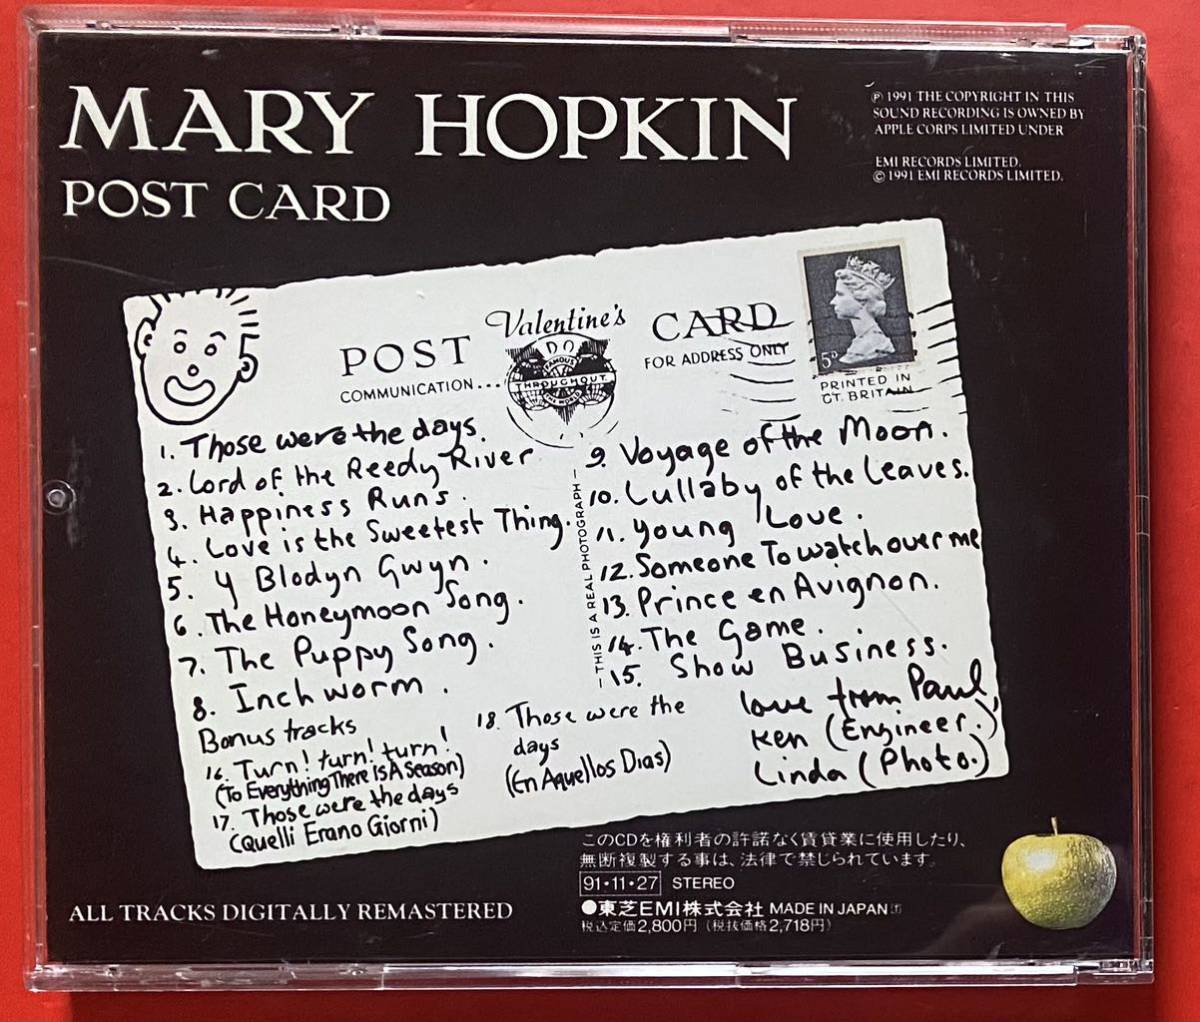 【CD】メリー・ホプキン「Post Card +3」MARY HOPKIN 国内盤 ボーナストラックあり [11070219]_画像2